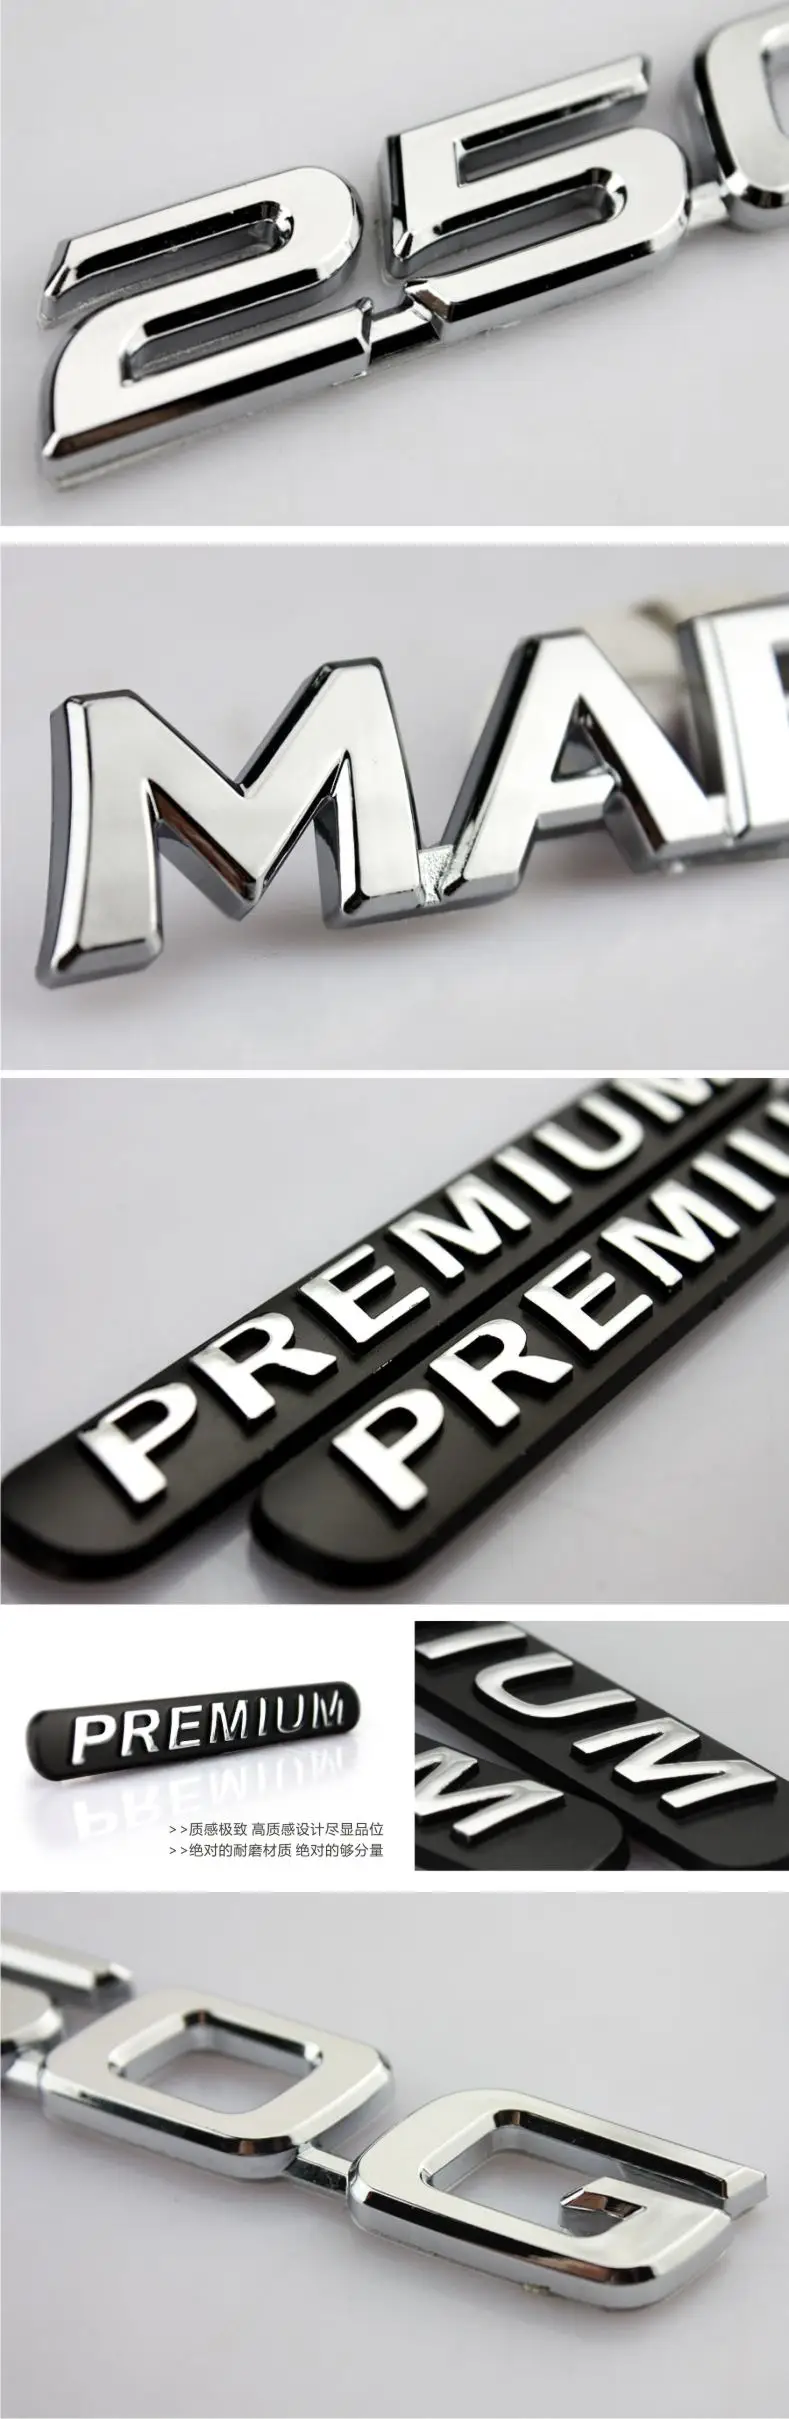 1 шт. 3D специальный модифицированный 250 г MARKX Премиум измененная эмблема маркировка для автомобилей знак, наклейка на автомобиль для рейз стайлинга автомобилей